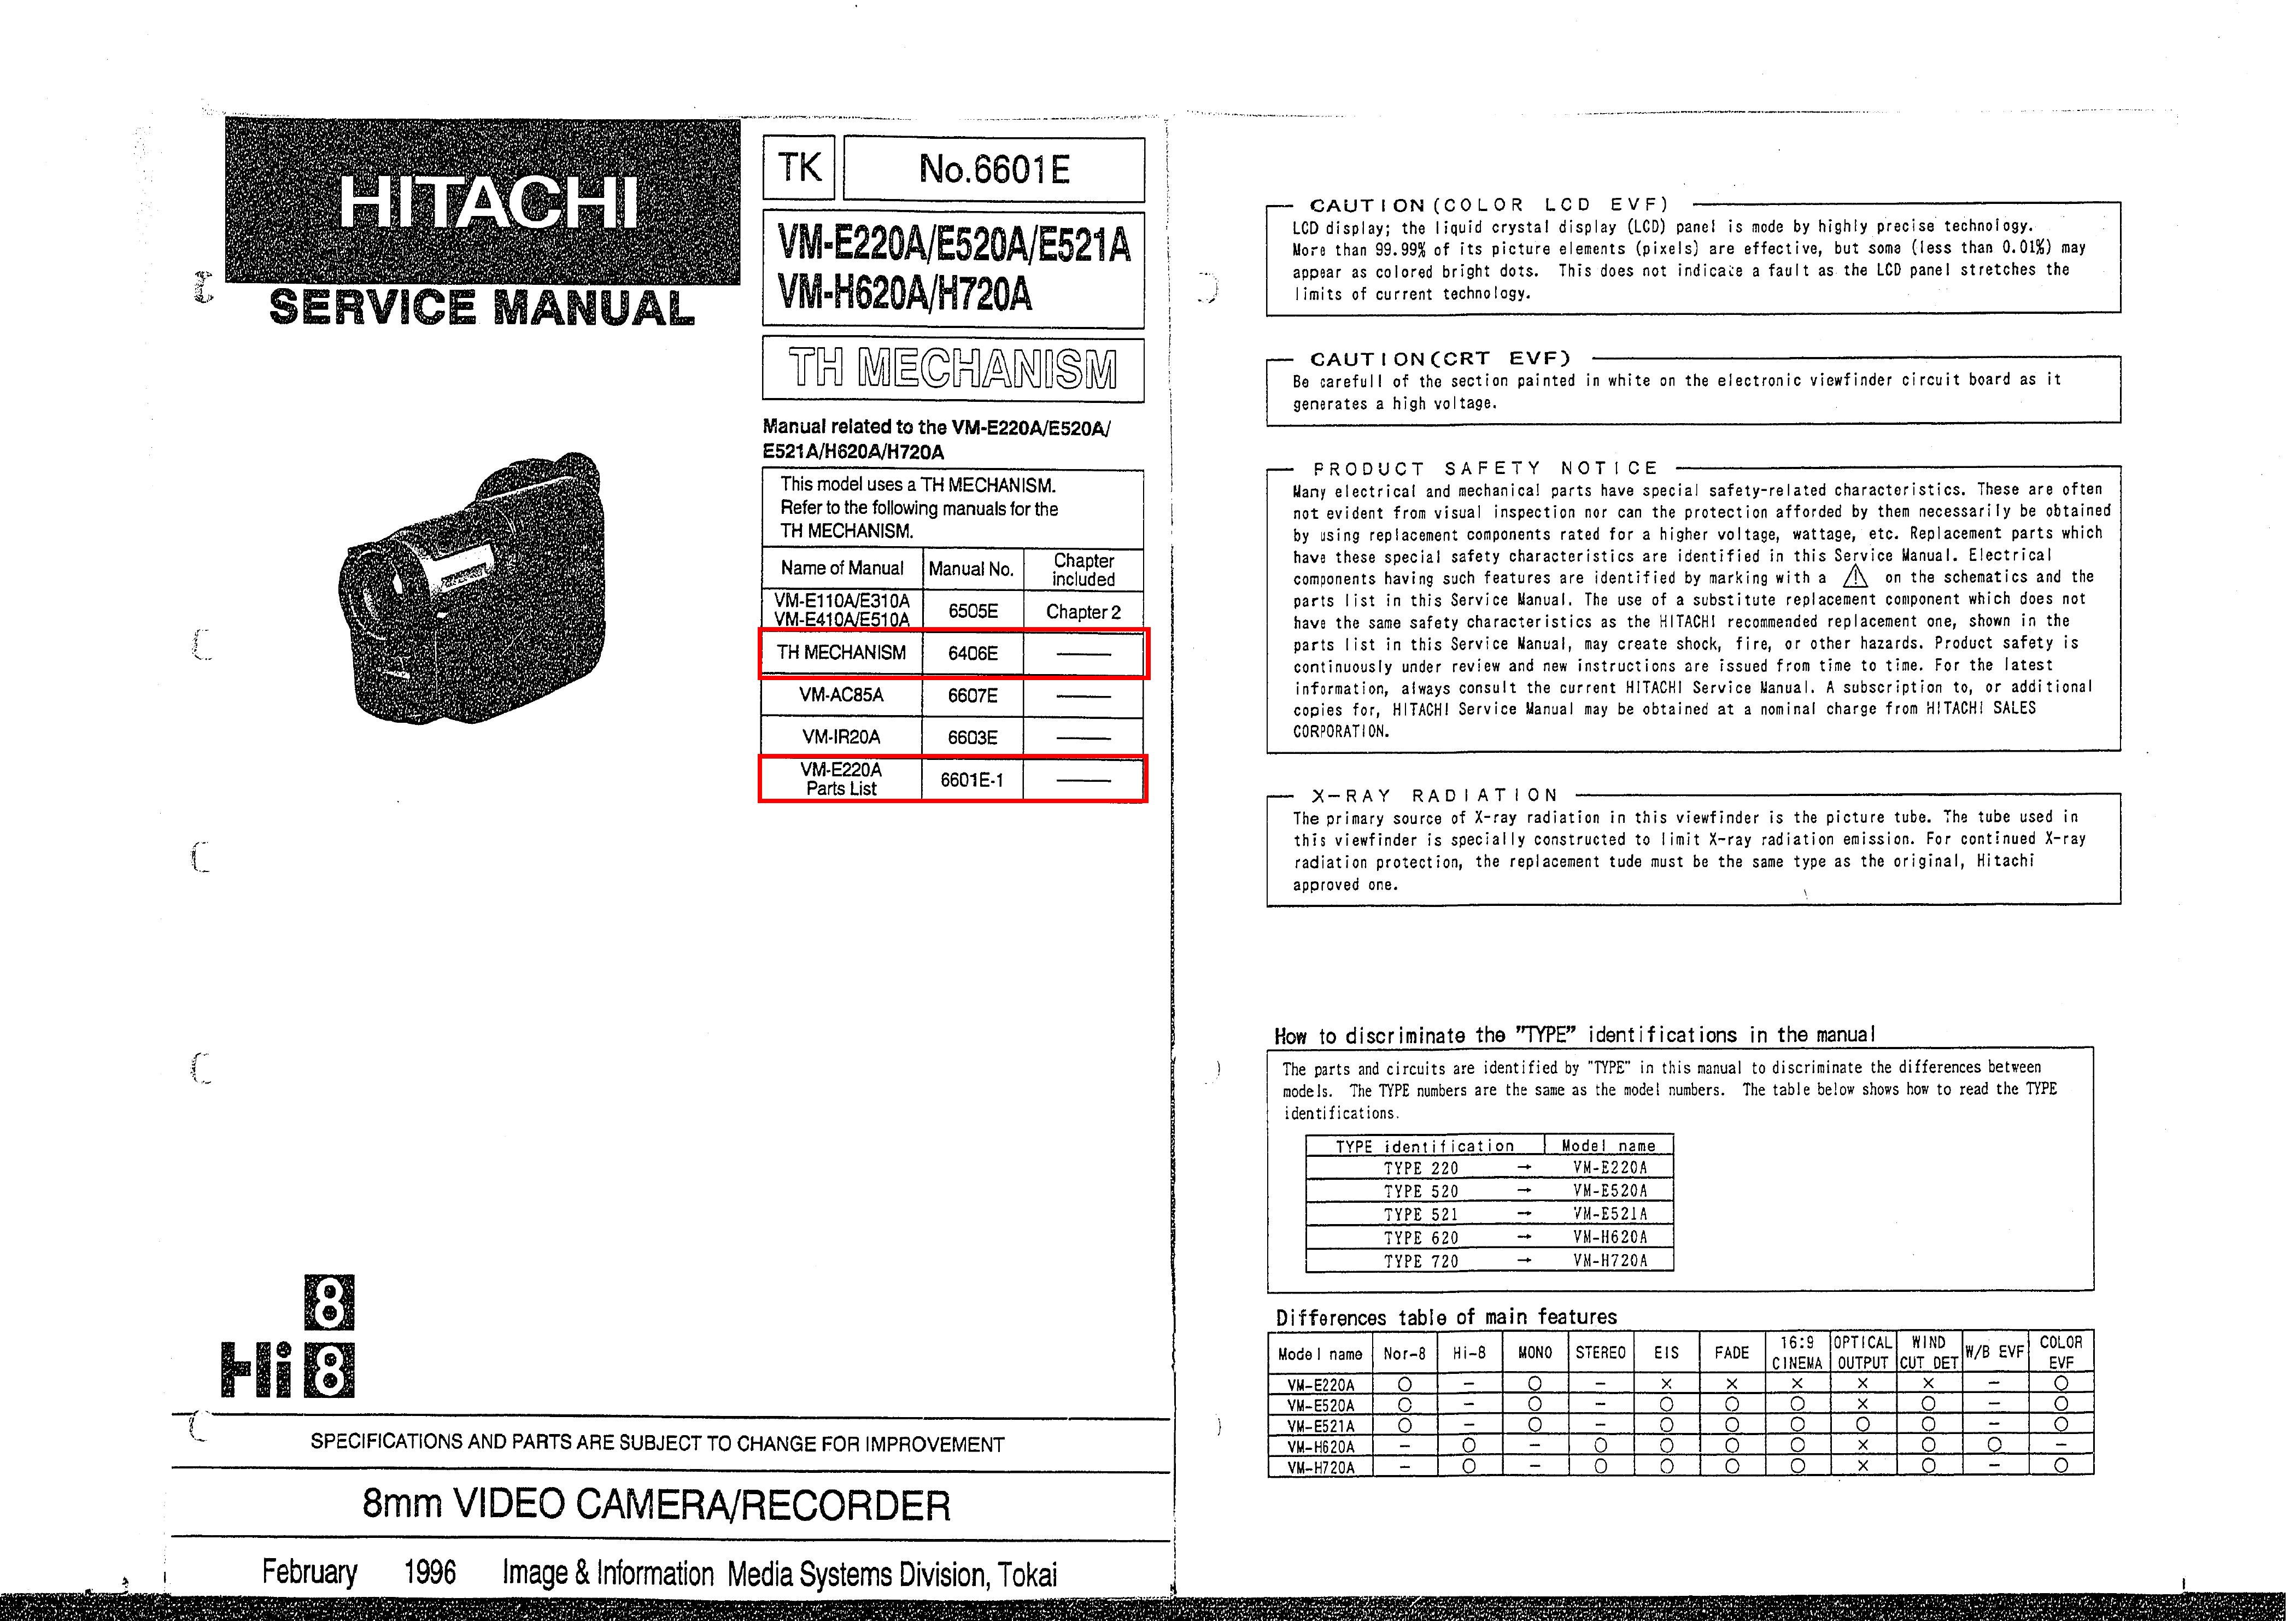 Hitachi E520A Camcorder User Manual